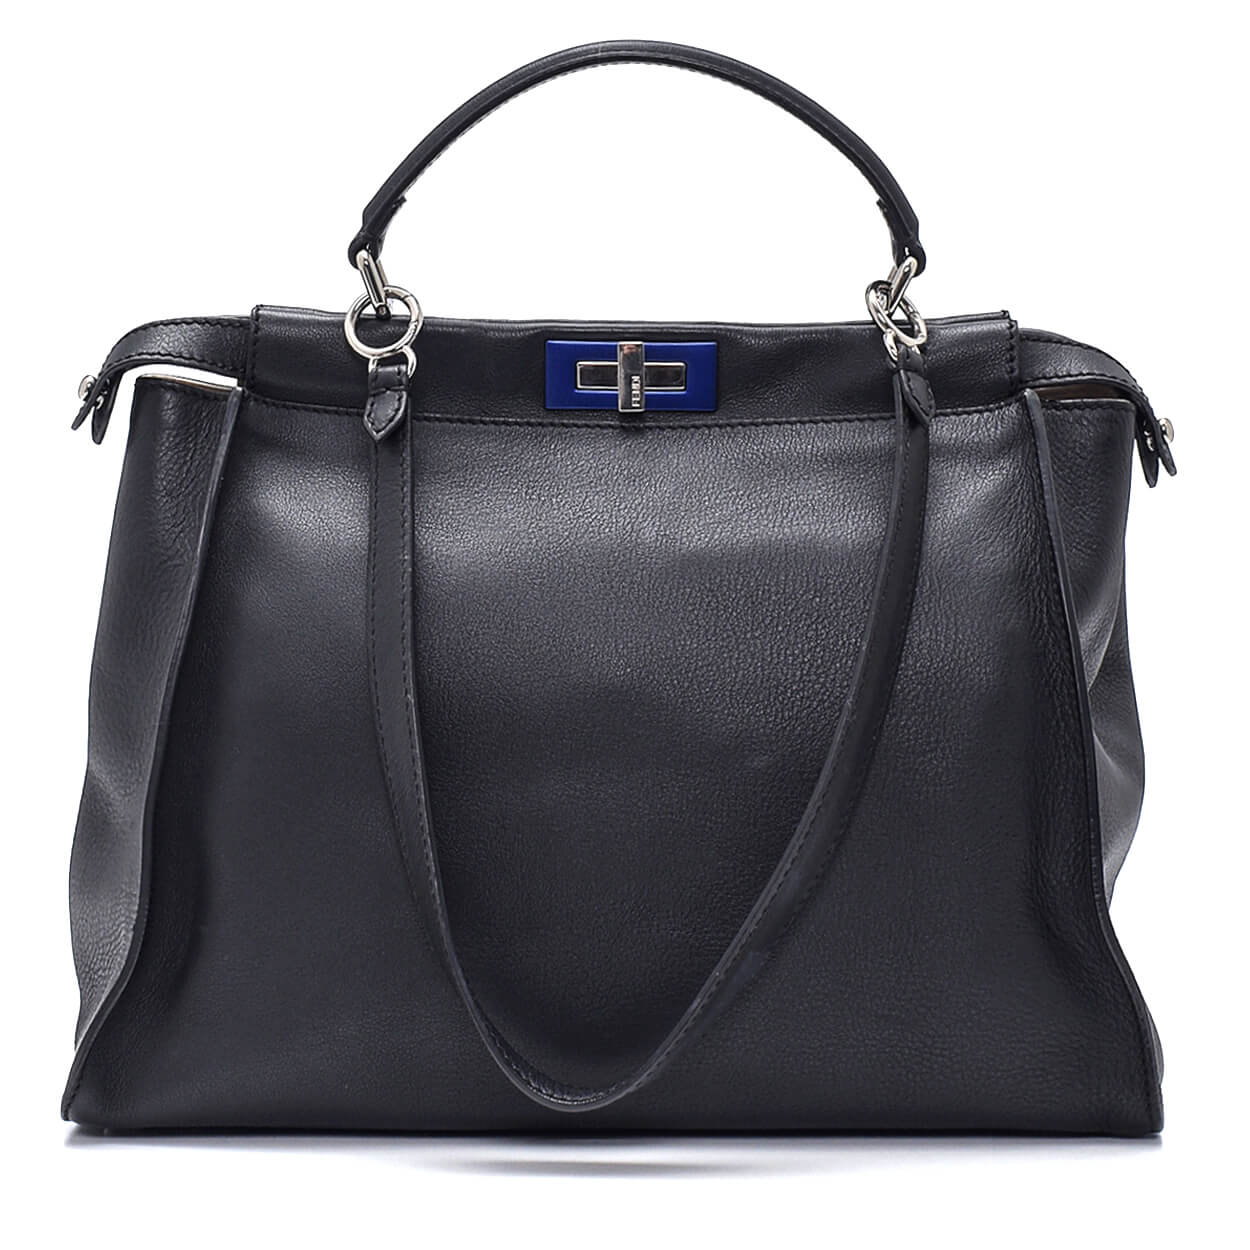 Fendi - Black Leather & Blue Twist Lock Peekaboo Large Bag